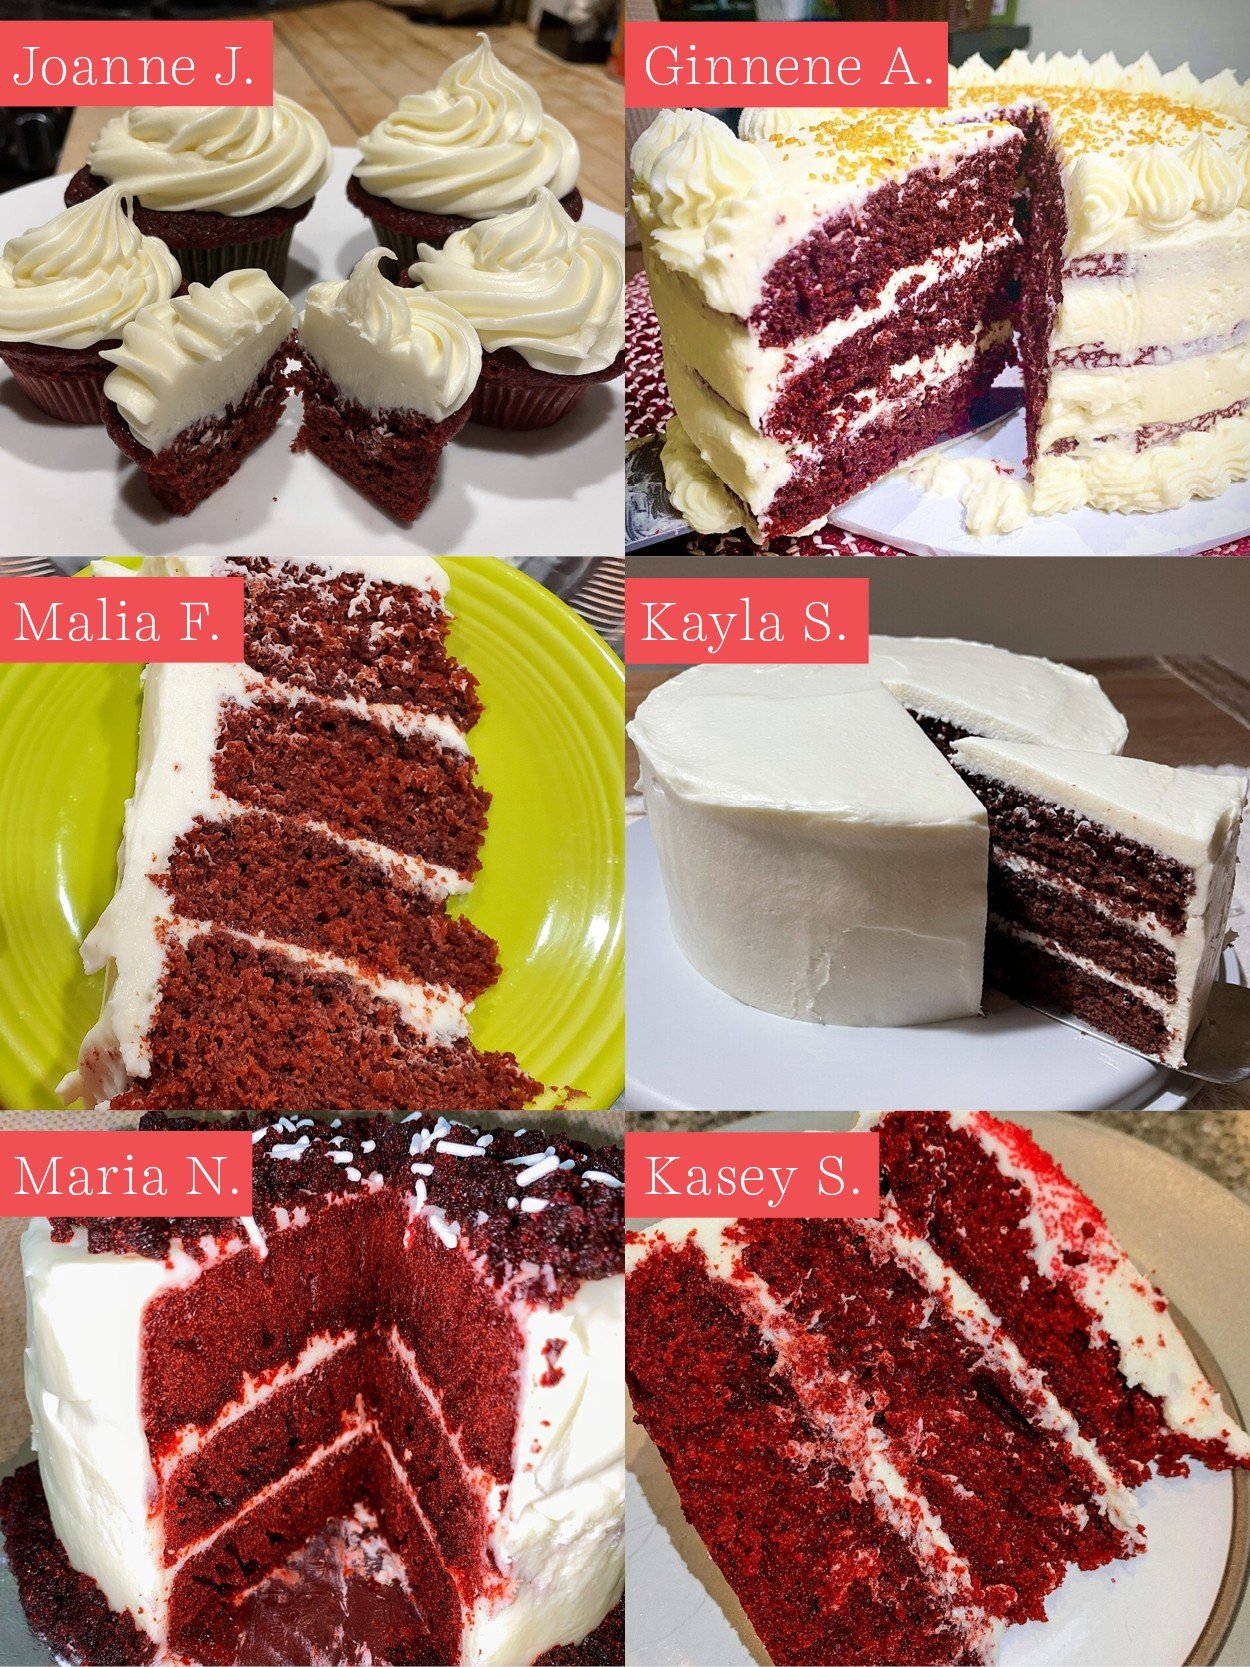 Easy Red Velvet Cake - Just so Tasty